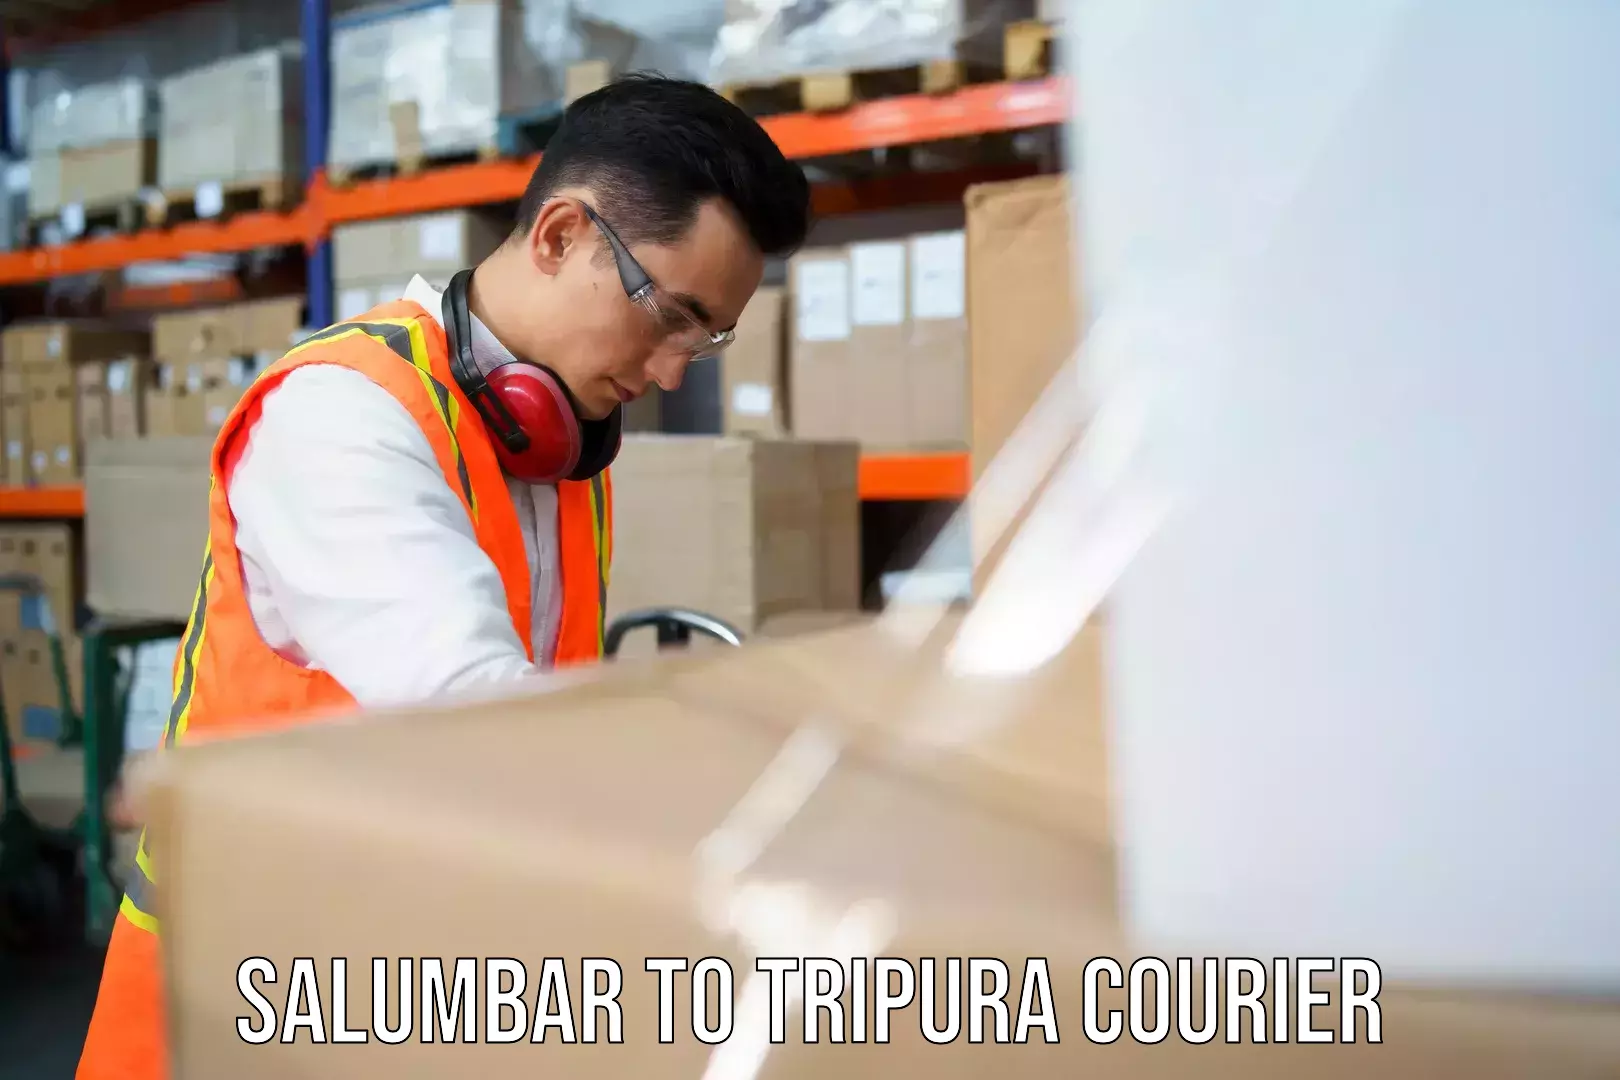 Customer-oriented courier services Salumbar to Kamalpur